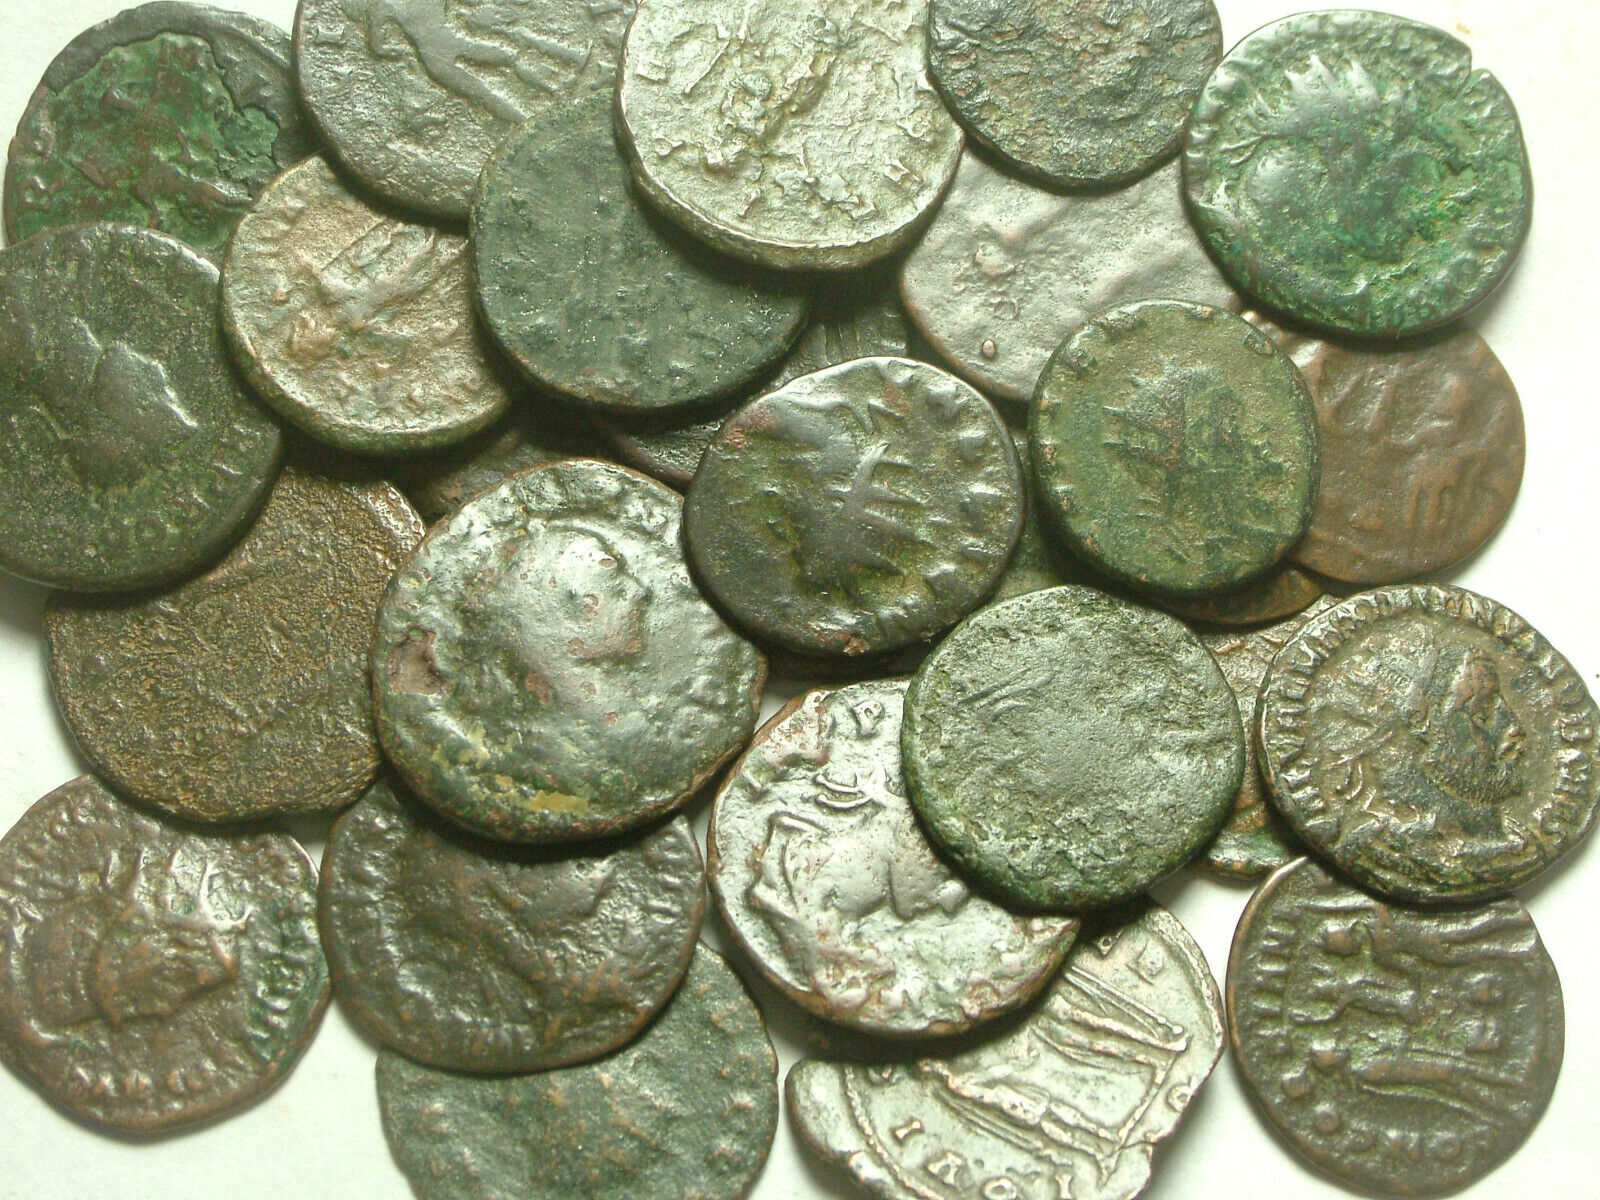 Lot of 3 Rare original Ancient Roman Antoninianus coins Probus Aurelian Claudius Без бренда - фотография #8